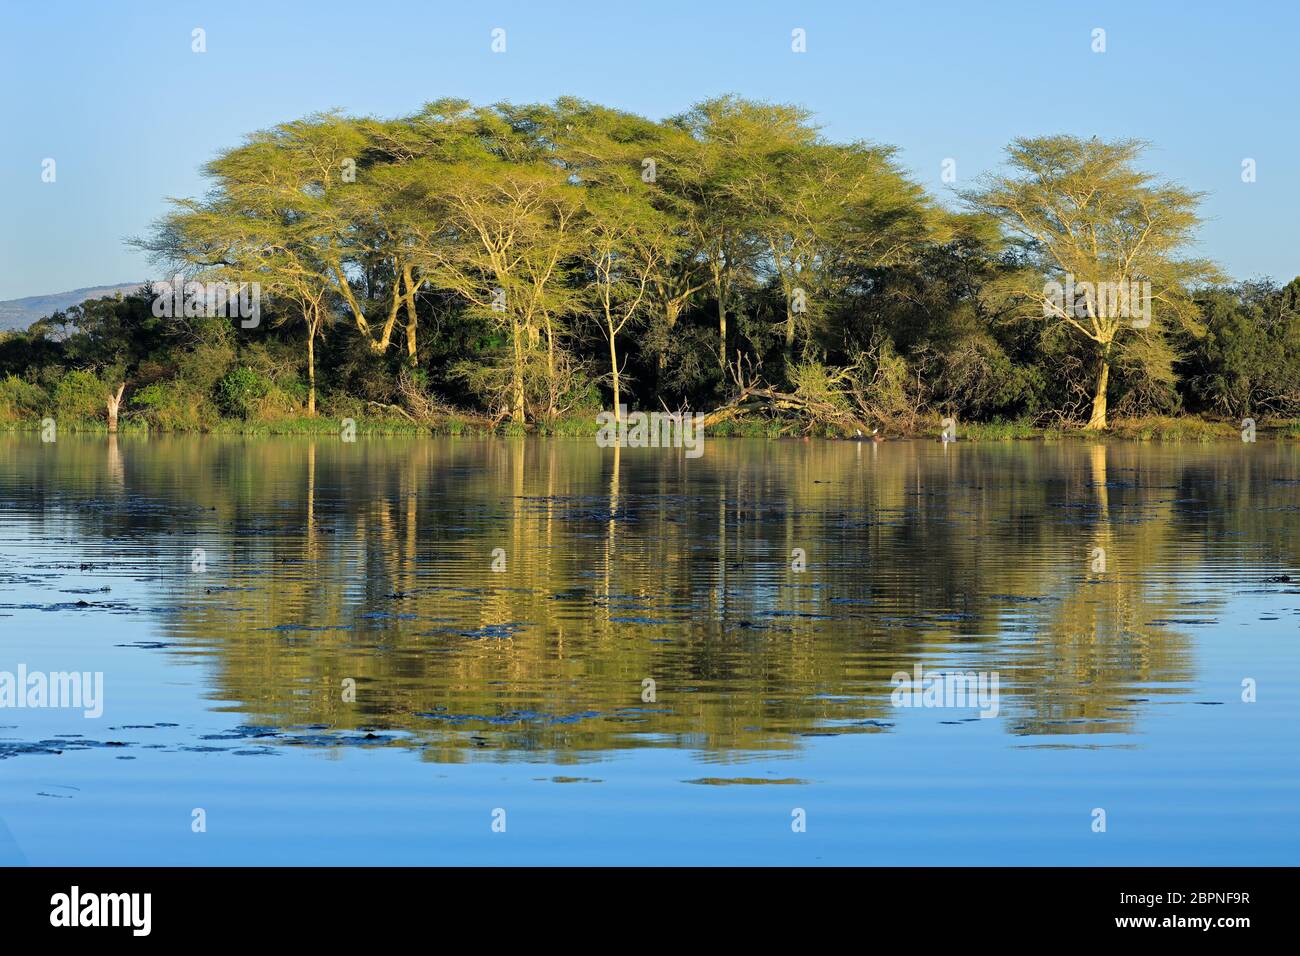 La fièvre distinctif des arbres (Vachellia xanthoploea) croissant sur le bord d'un lac, Mkuze game reserve, Afrique du Sud Banque D'Images